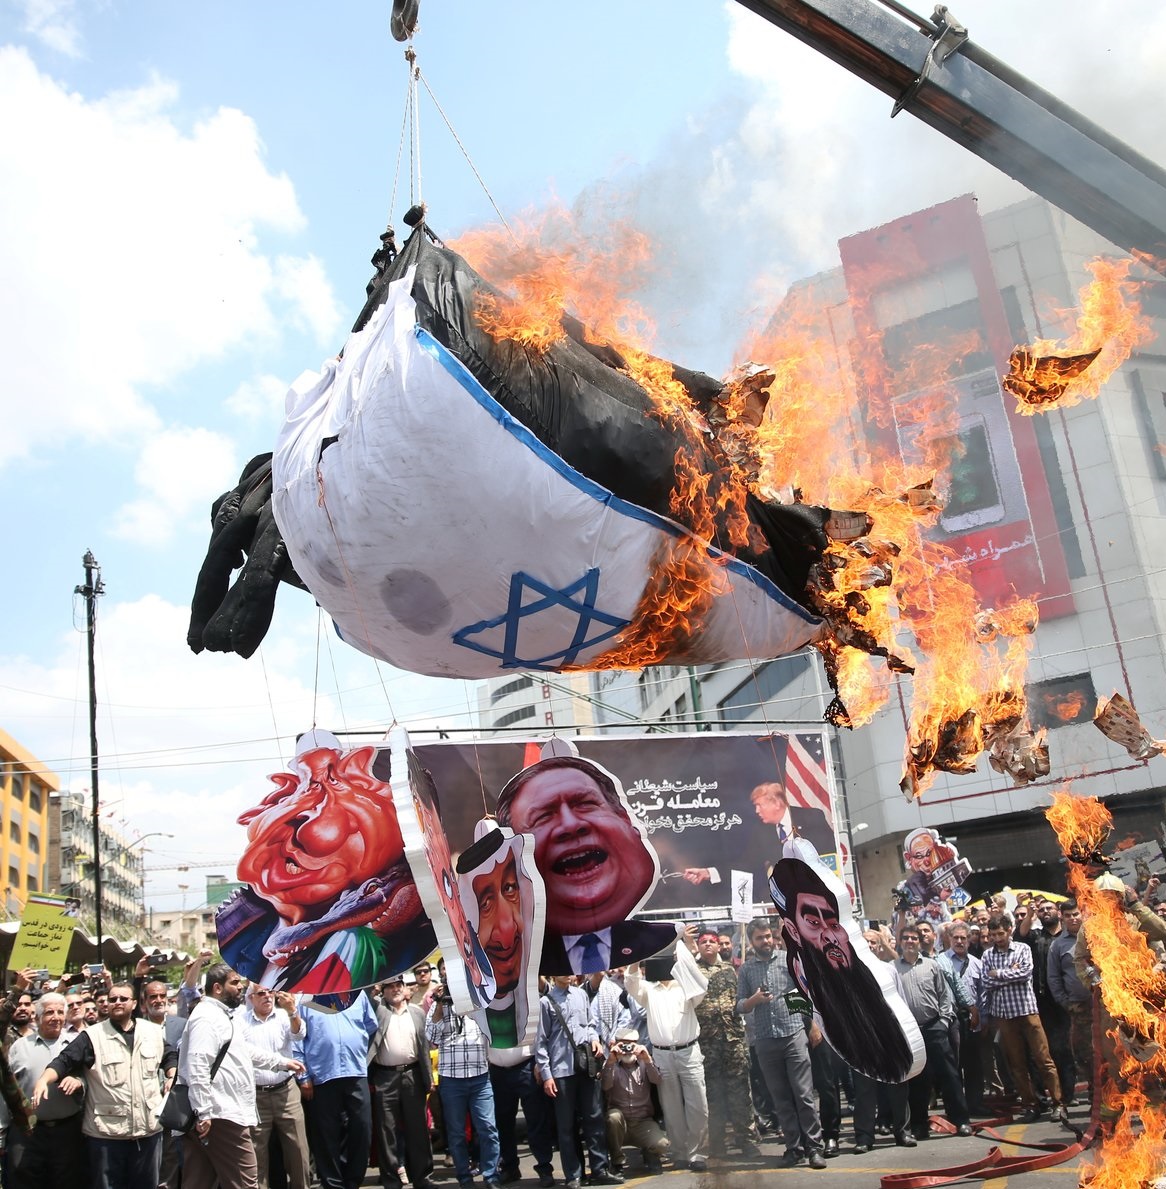 Iranianos queimam bandeira de Israel durante marcha do "Dia de Quds (Jerusalém)" em Teerã 31/05/2019 Meghdad Madali/Agência Tasnim/via REUTERS